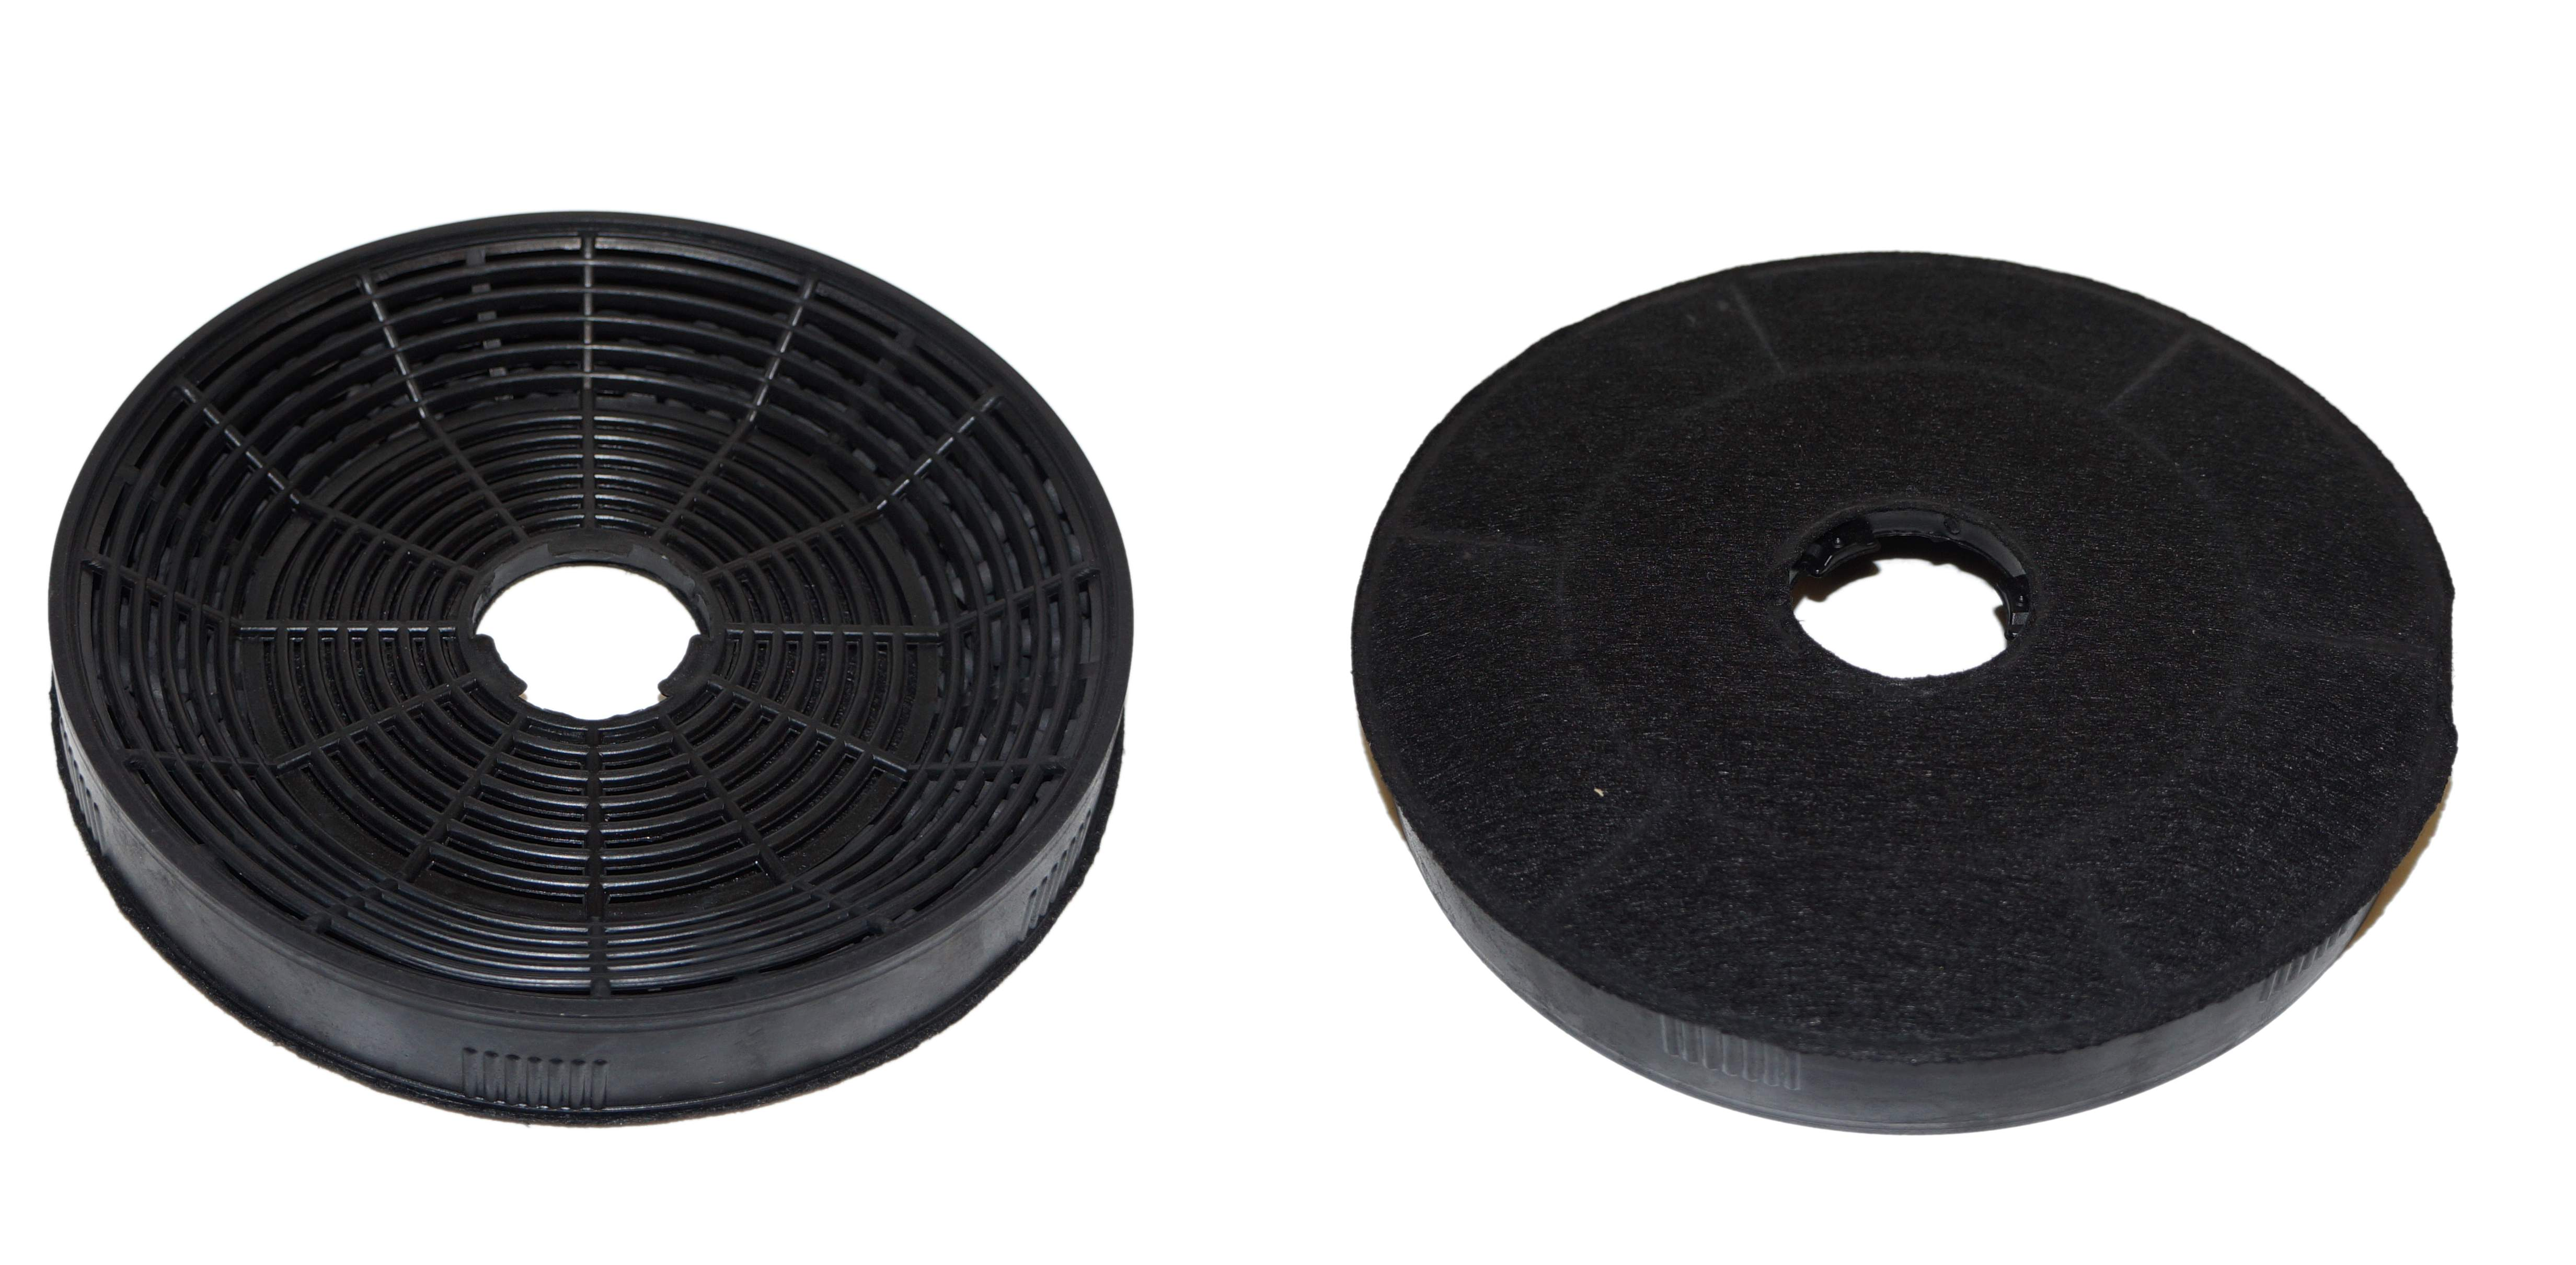 Kohlefilter für Dunstabzugshaube, Durchmesser 160 mm 1 Stück